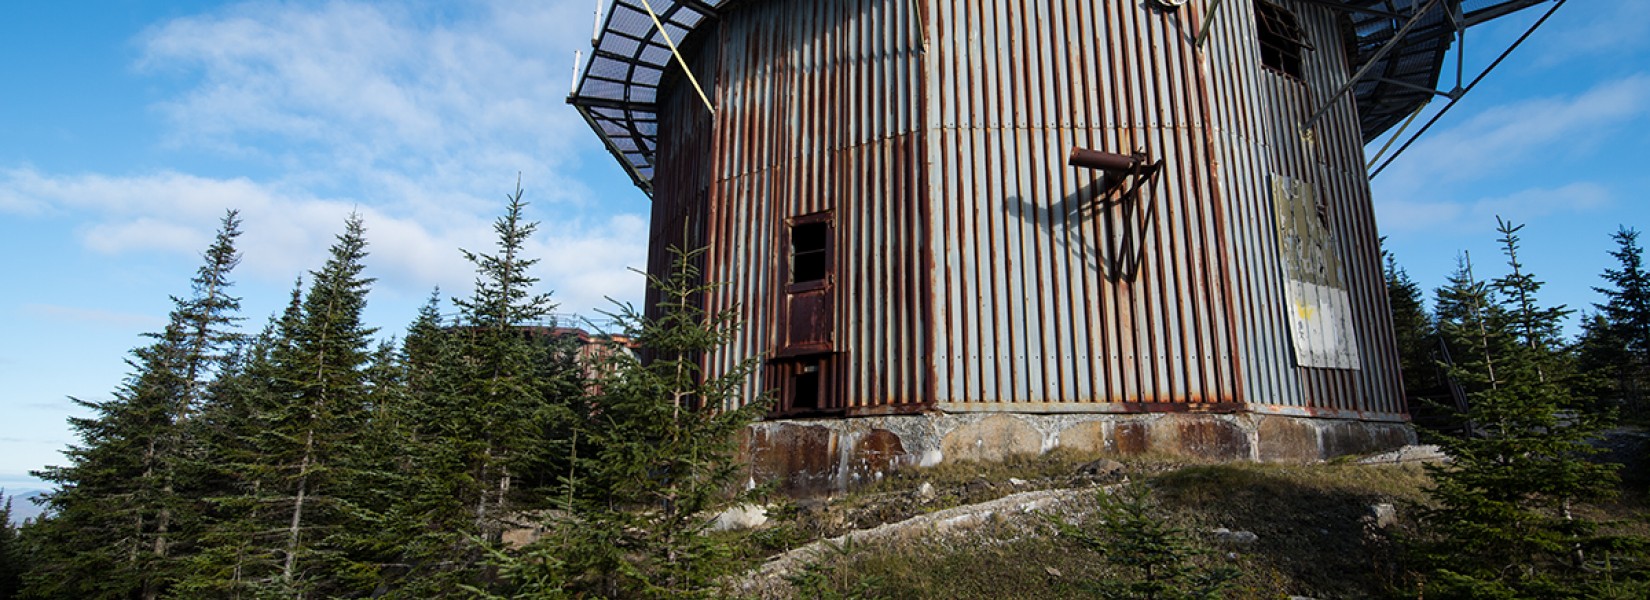 La station radar abandonnée de East Haven